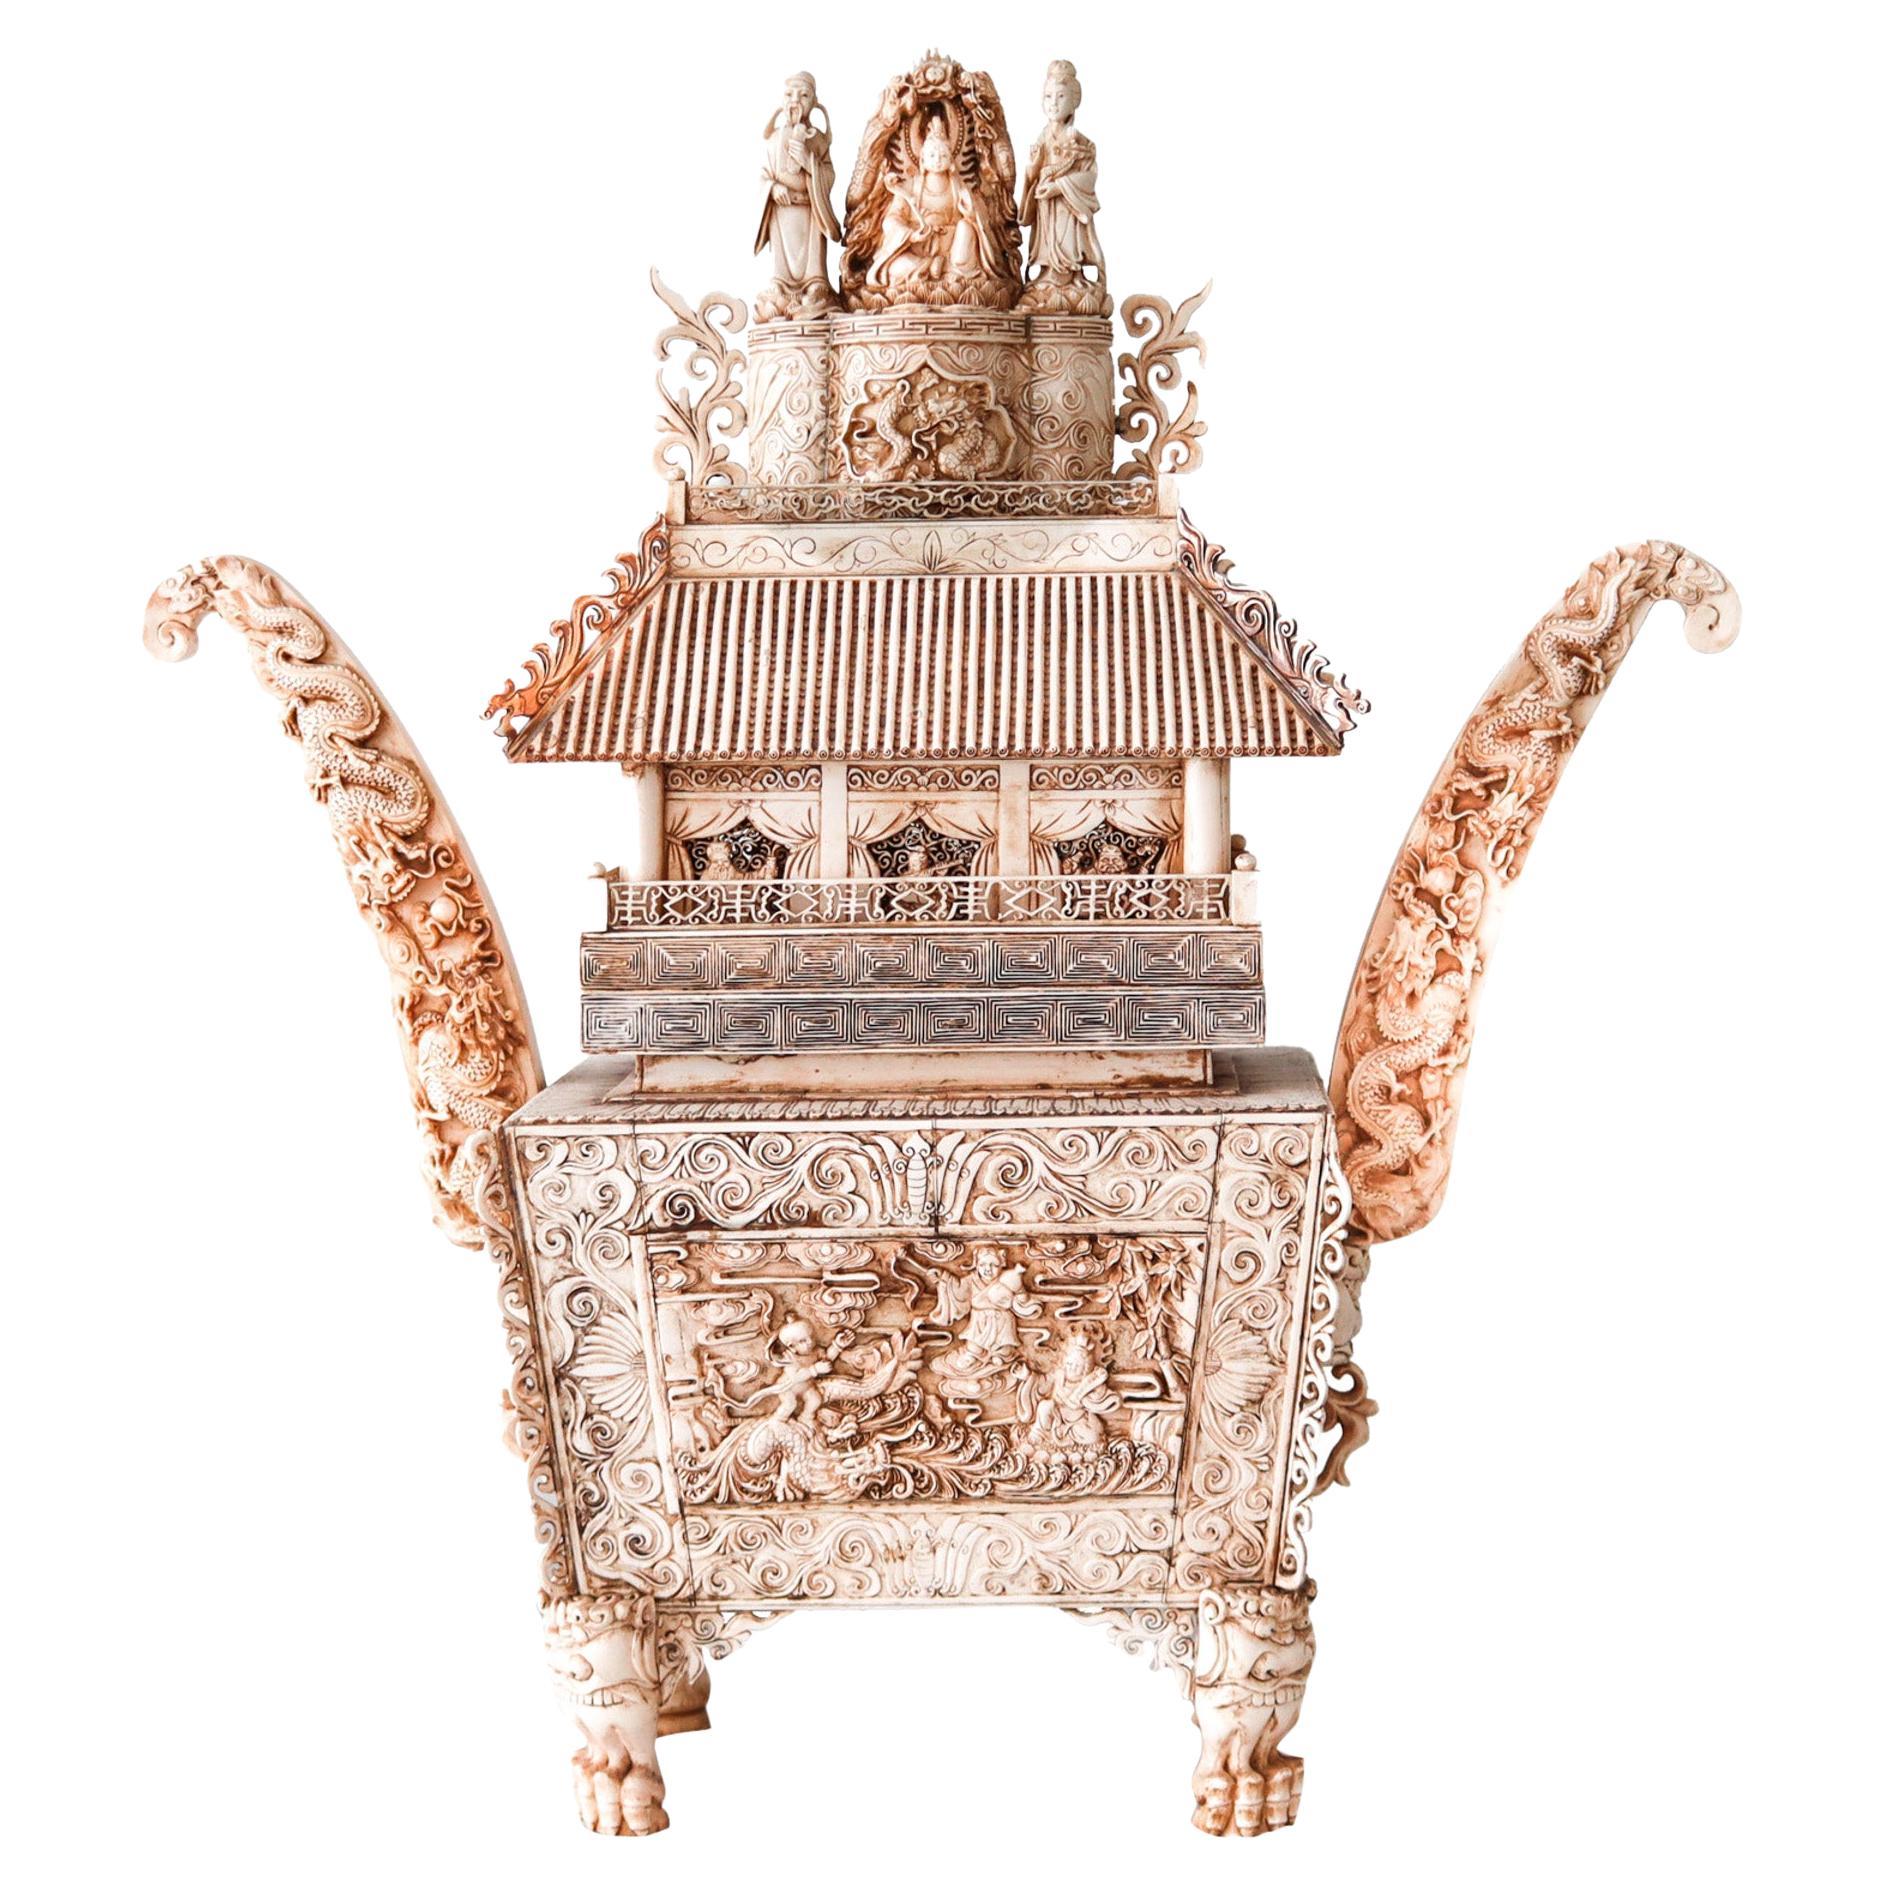 Chinesisch 1900 Qing Dynasty Bodhisattva Altar Tempel-Pagode in Holz und Schnitzereien